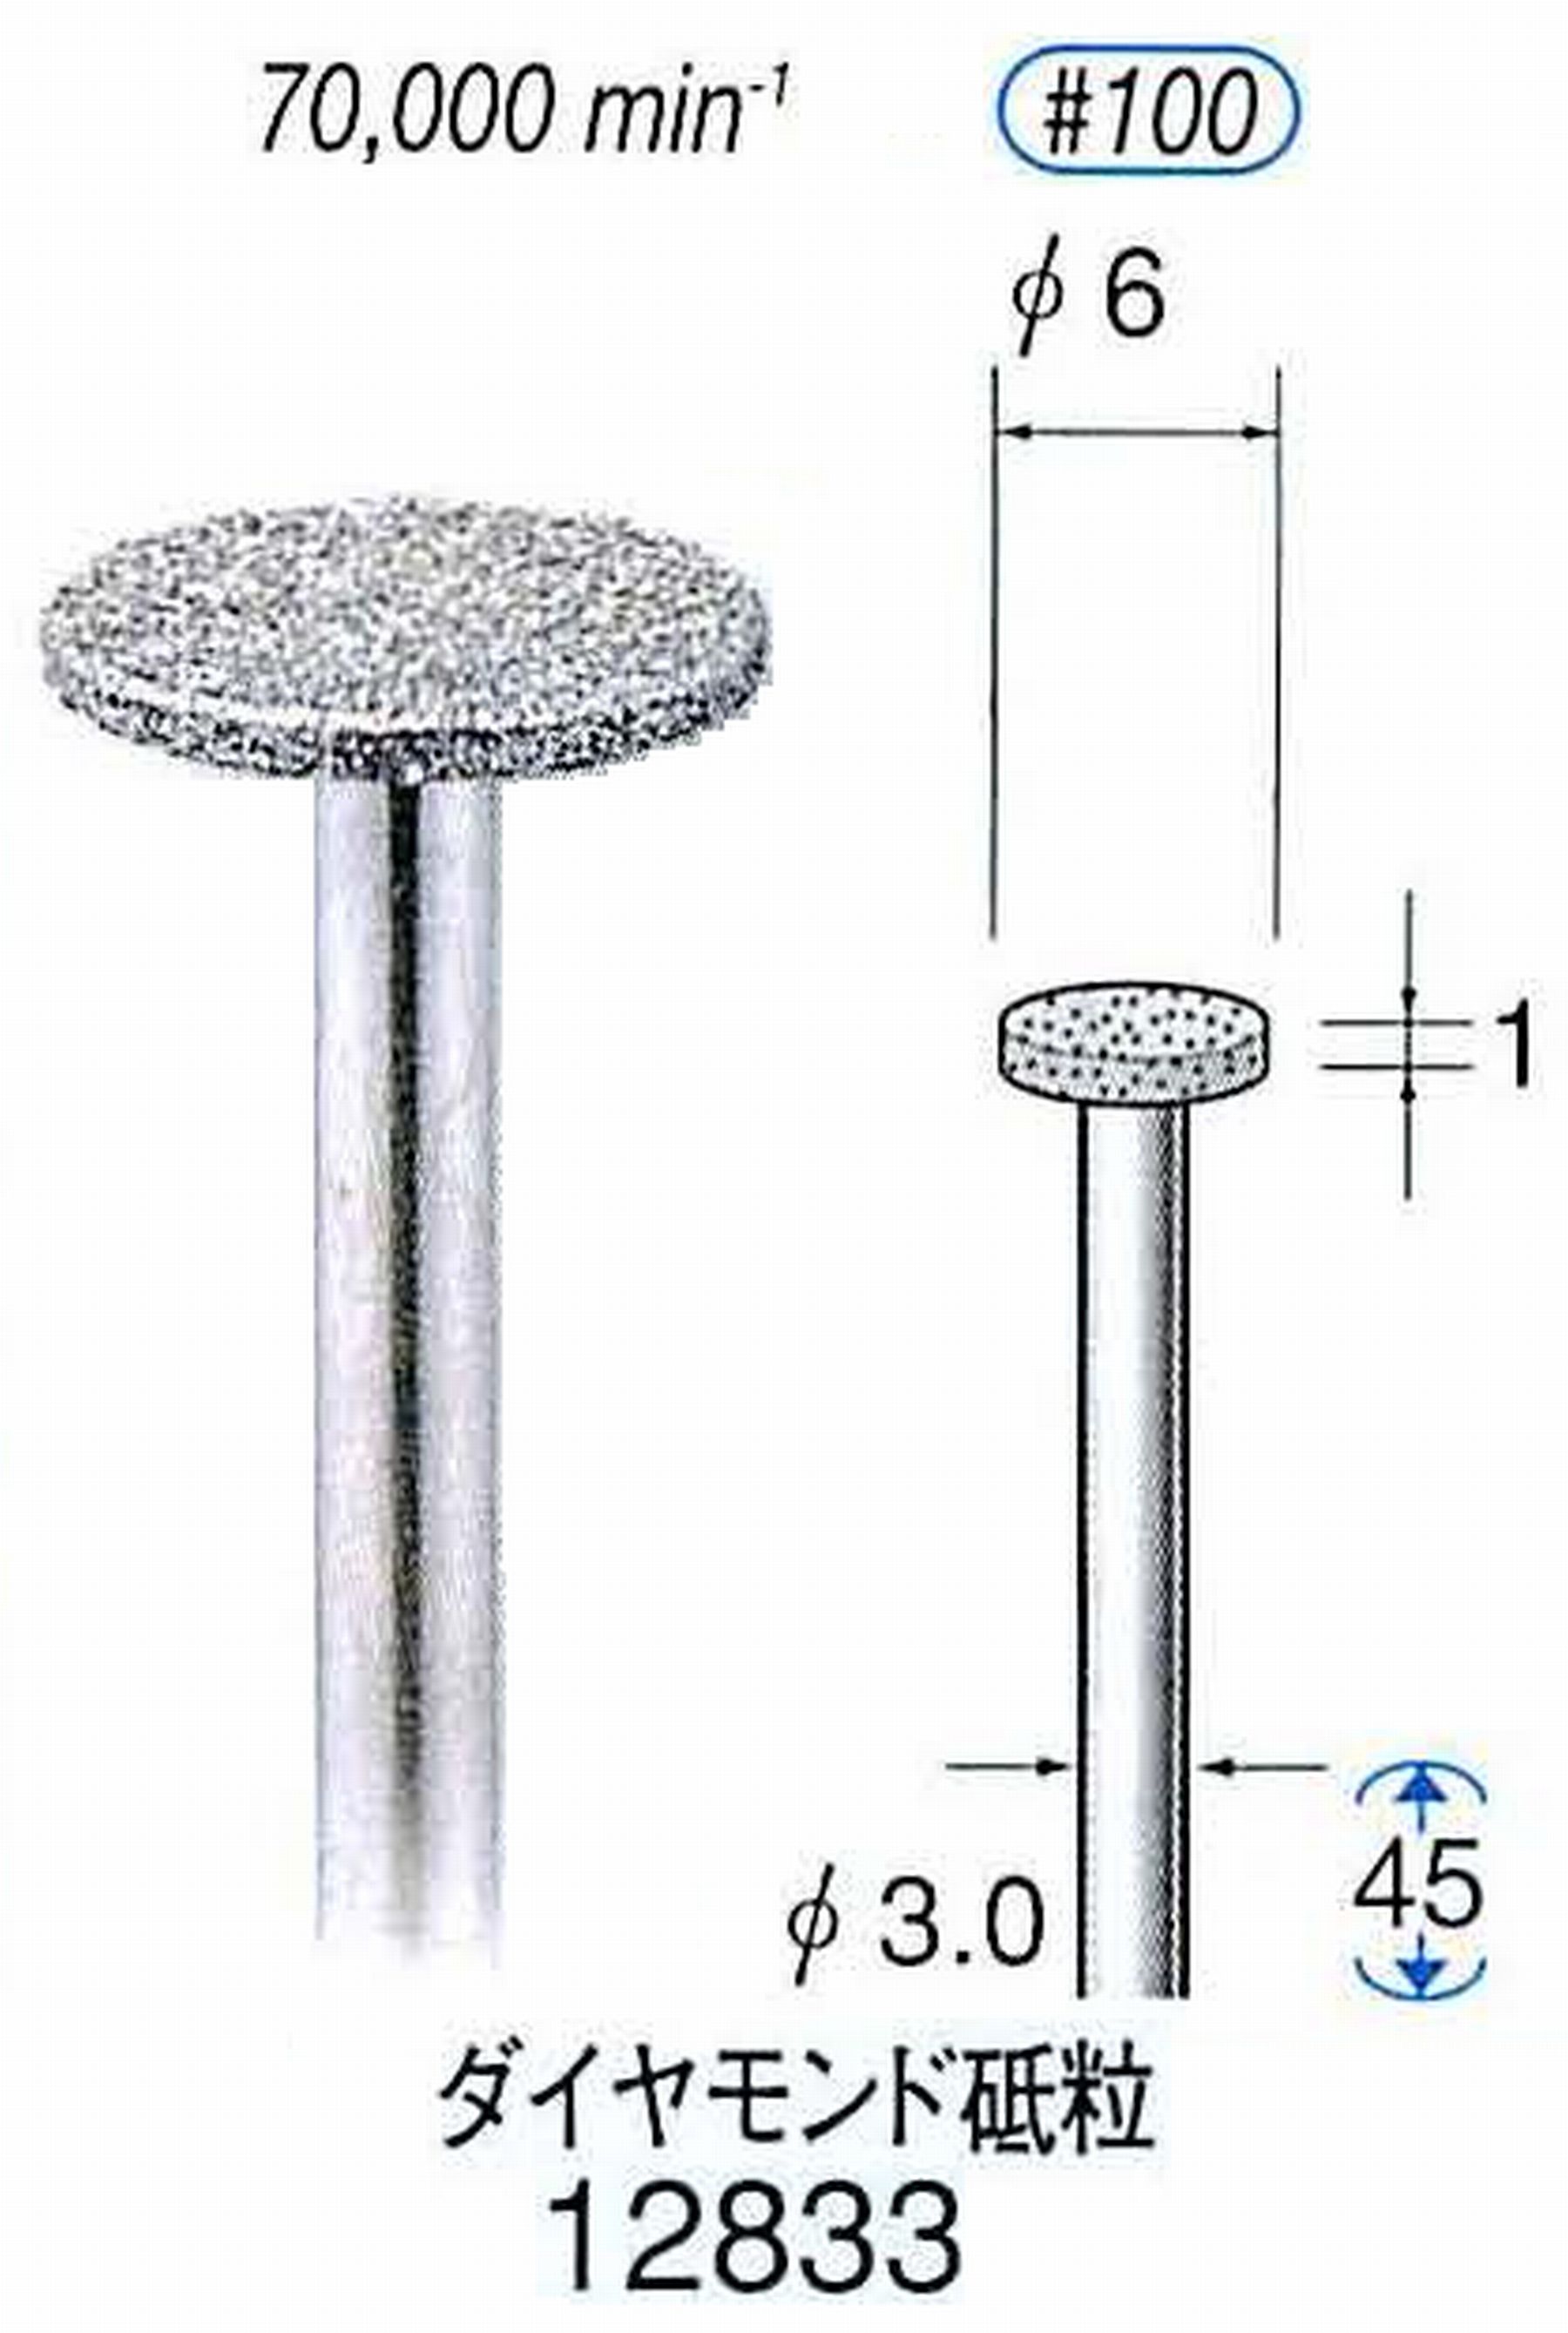 ナカニシ/NAKANISHI クラフト・ホビー用ダイヤモンドバー ダイヤモンド砥粒 軸径(シャンク)φ3.0mm 12833